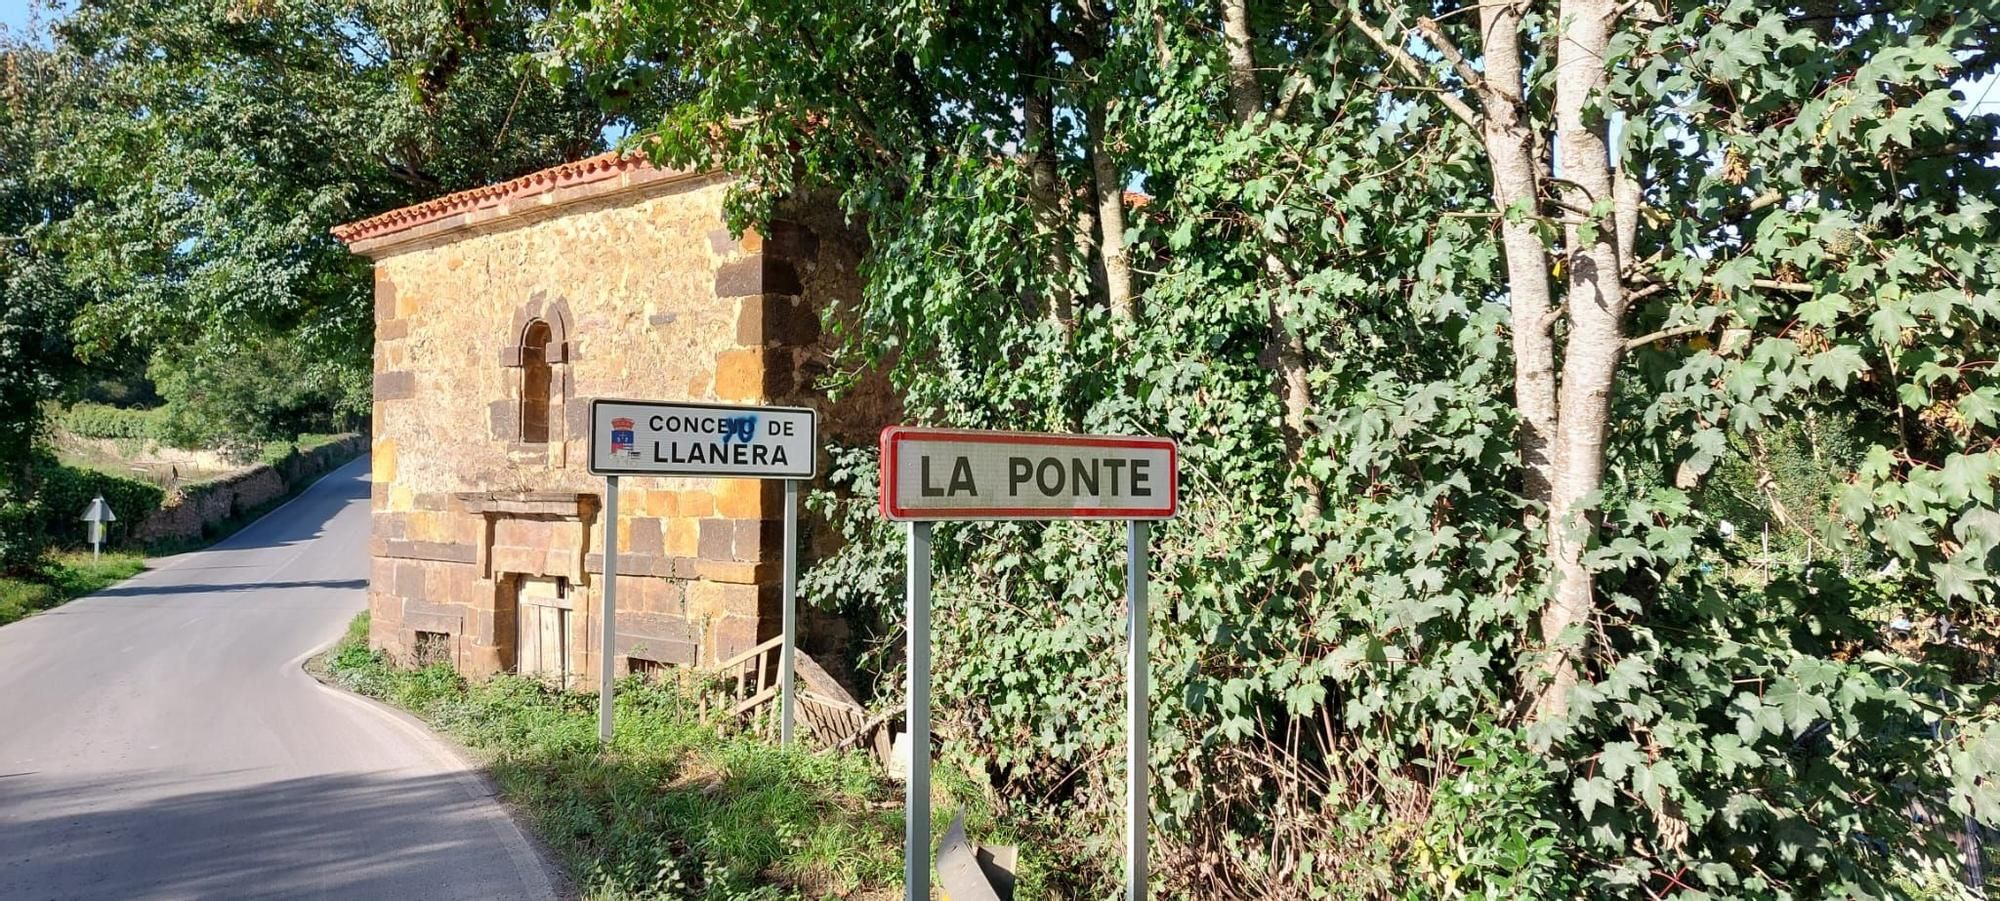 De La Ponte a Villar, el tramo jacobeo de Llanera que conecta el Camino Primitivo y el de la Costa